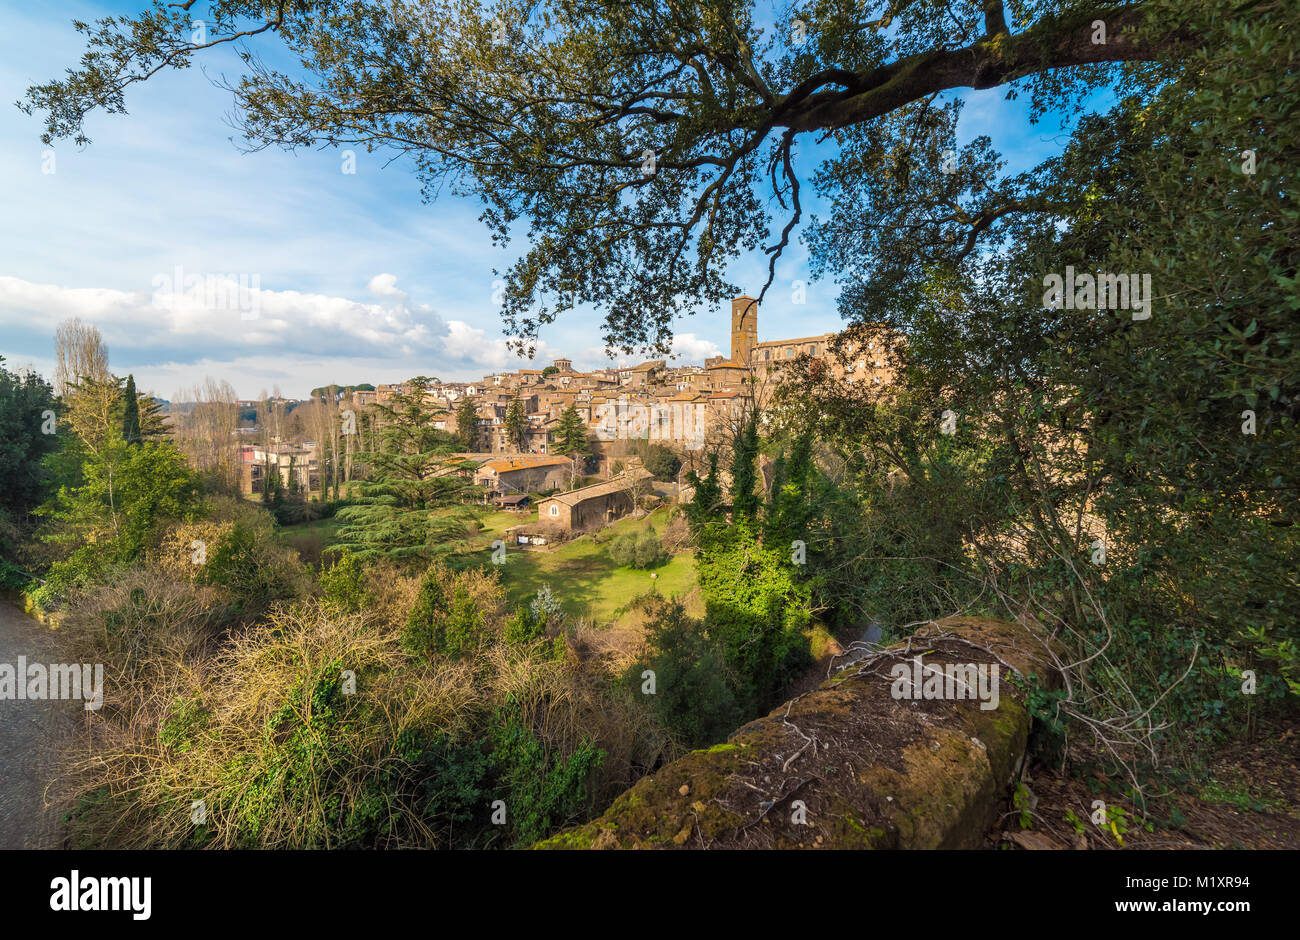 Sutri, Italia - un borgo medievale della Tuscia con un affascinante sito archeologico risalente all'Impero Romano Foto Stock